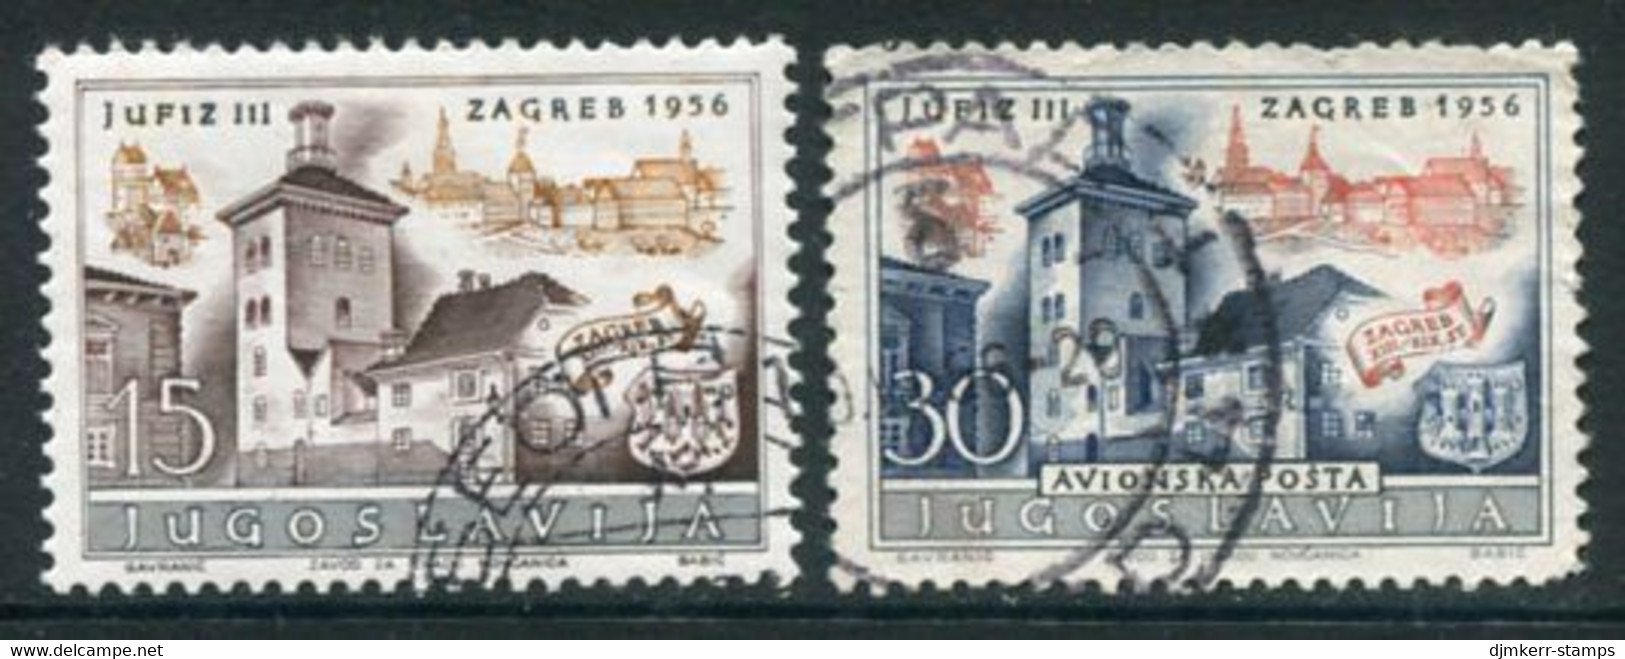 YUGOSLAVIA 1956 JUFIZ III Philatelic Exhibition Used.  Michel 788-89 - Used Stamps